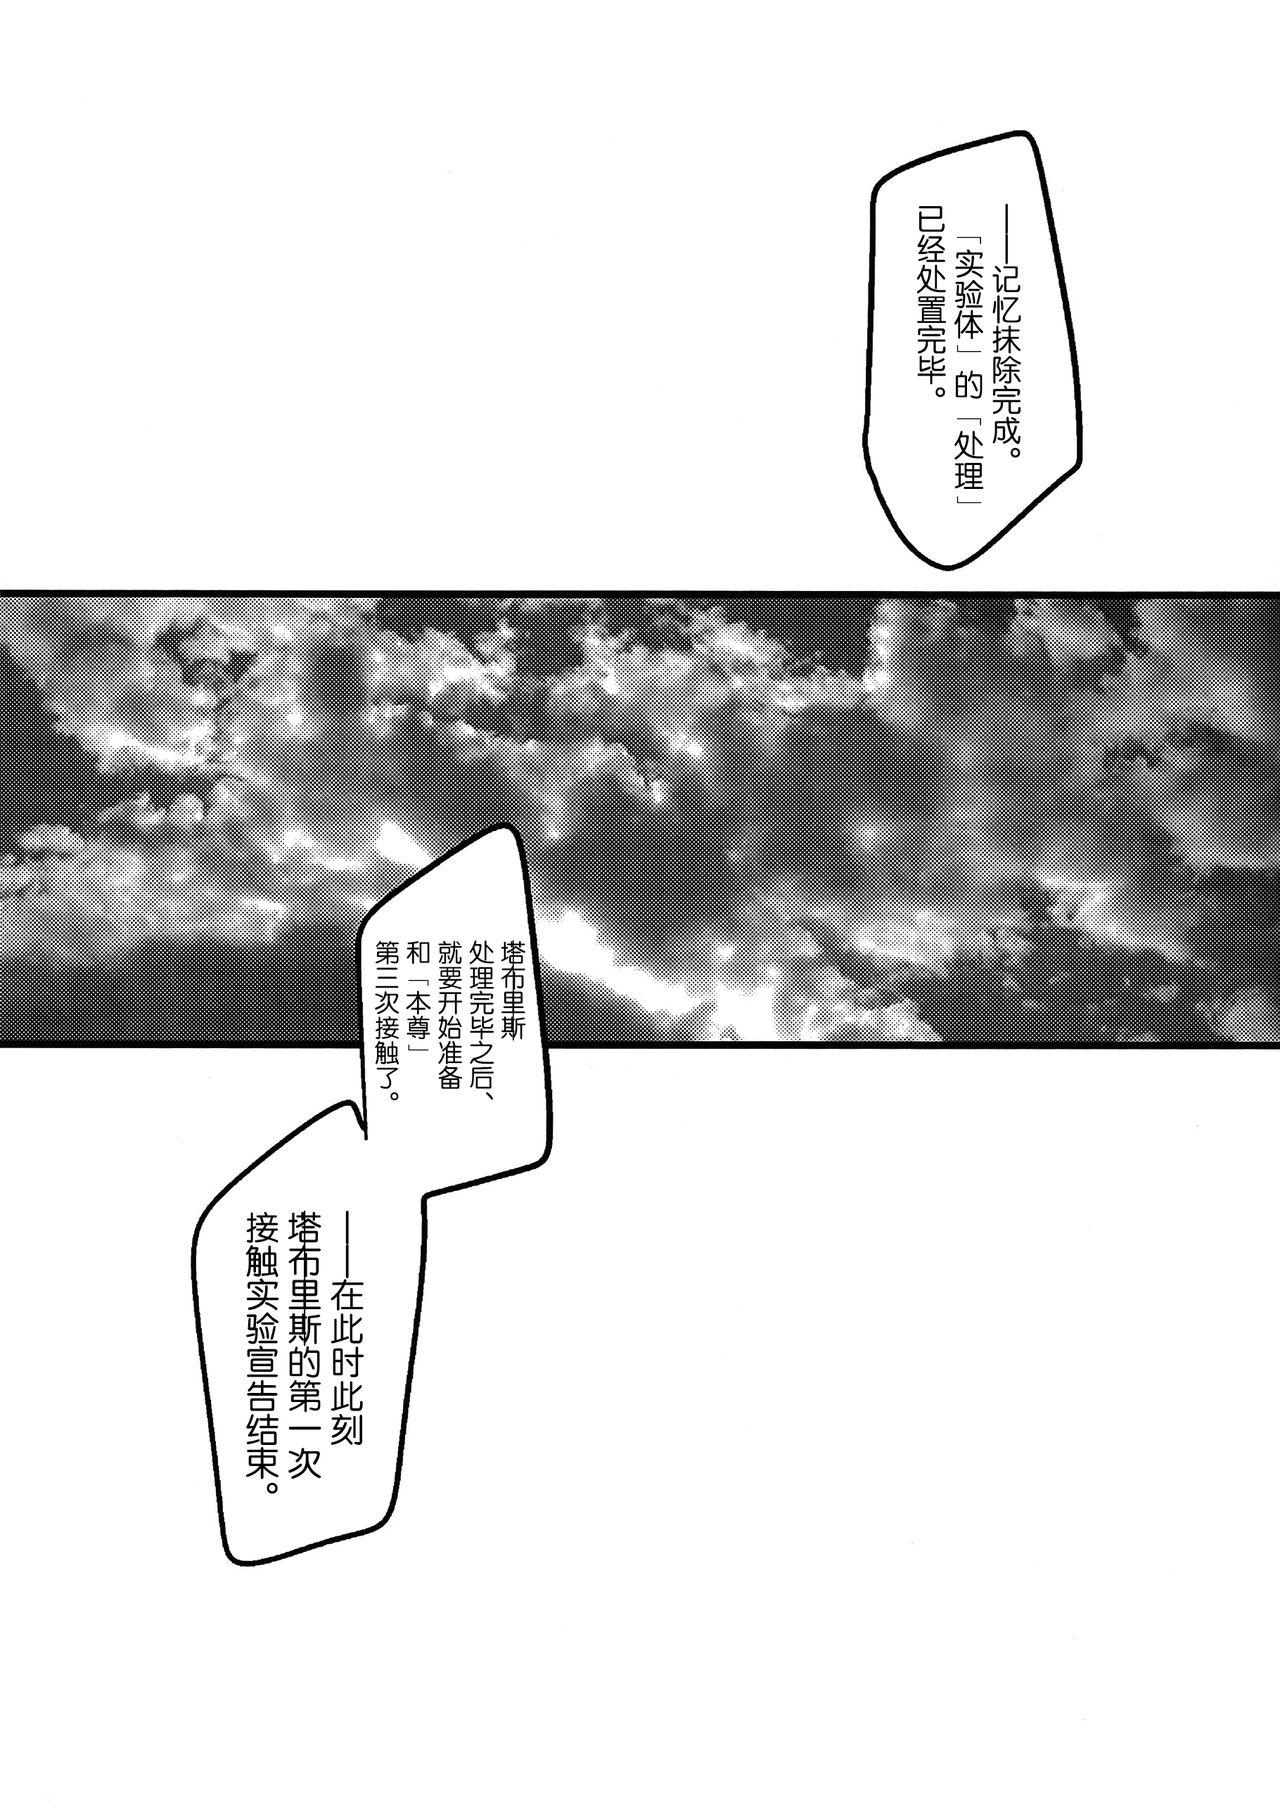 Taboo Ore no Koto o Ikari Shinji da to Omoikomu Saimin ni Kakatta Nagisa Kaworu-kun wa Mechamecha Yasashii - Neon genesis evangelion Police - Page 11